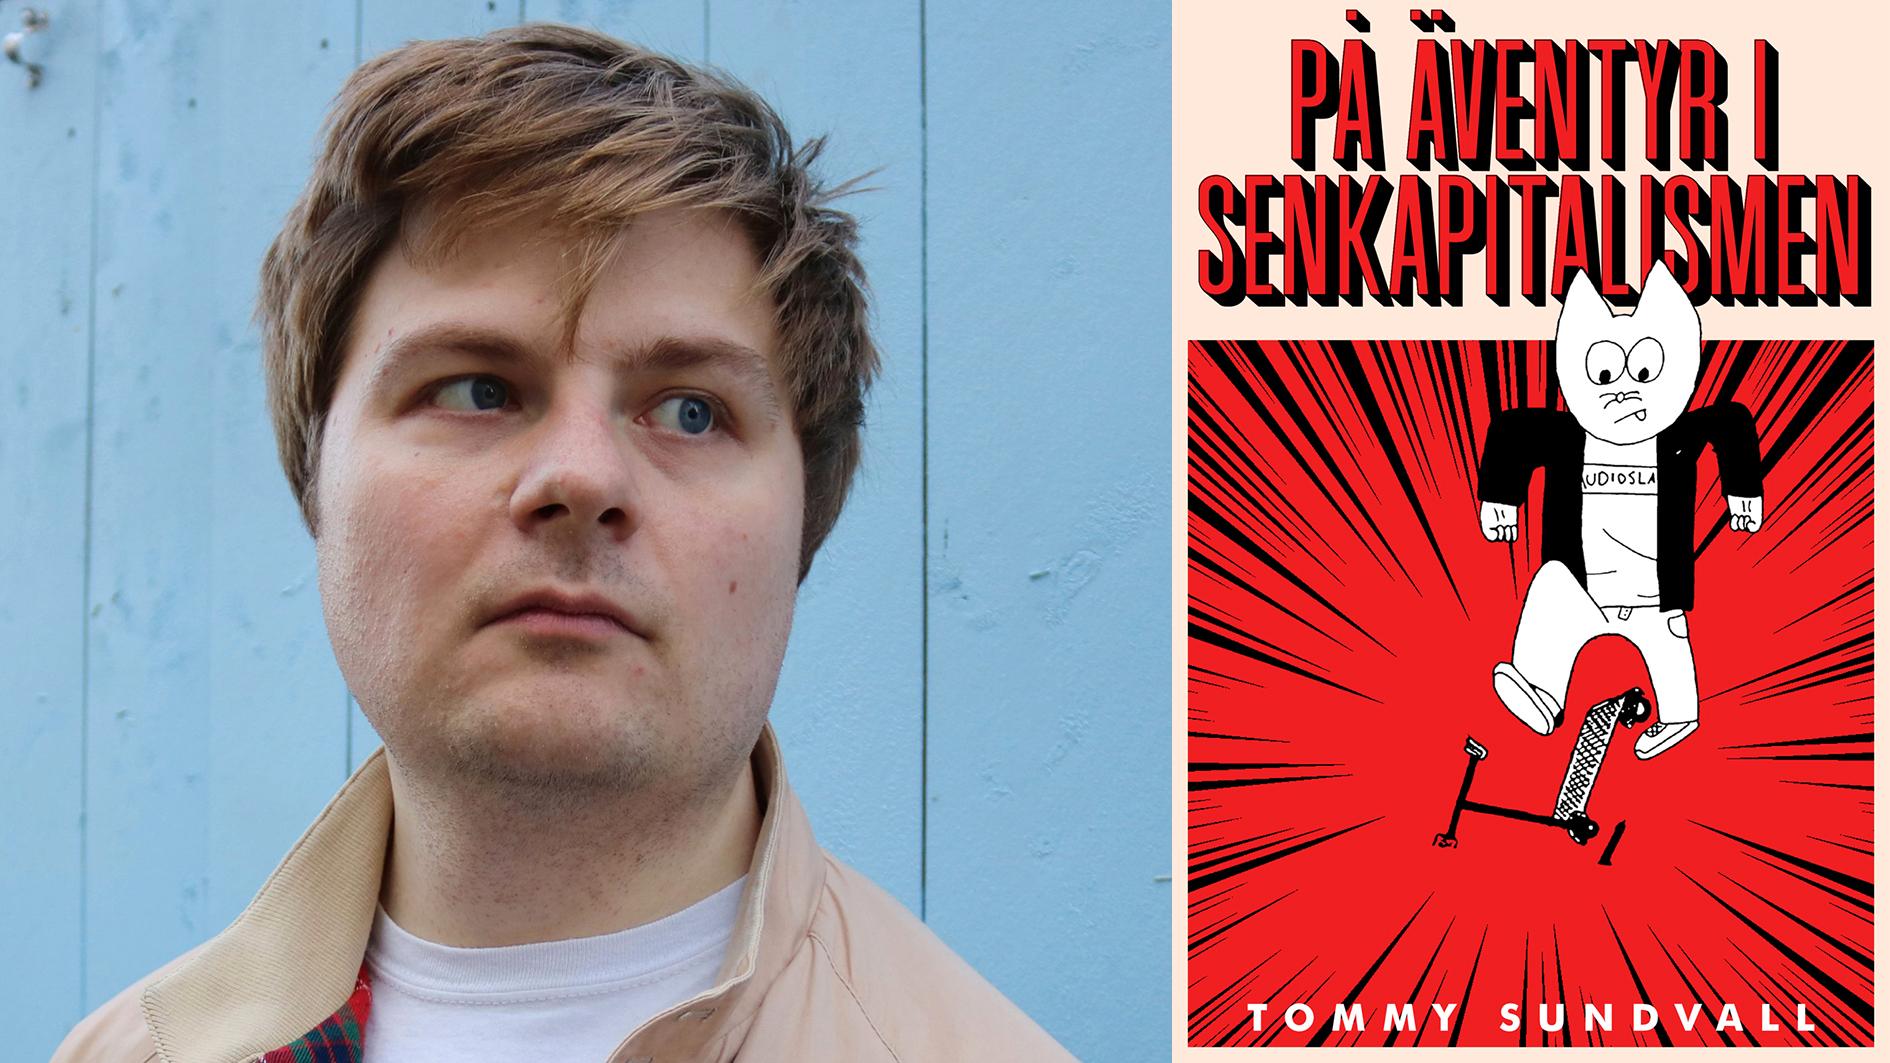 Tommy Sundvall (född 1988) medverkar regelbundet i tidskrifterna Brand och Det grymma svärdet. Delar av hans debut ”På äventyr i senkapitalismen” har publicerats som följetong i tidningen Arbetaren.